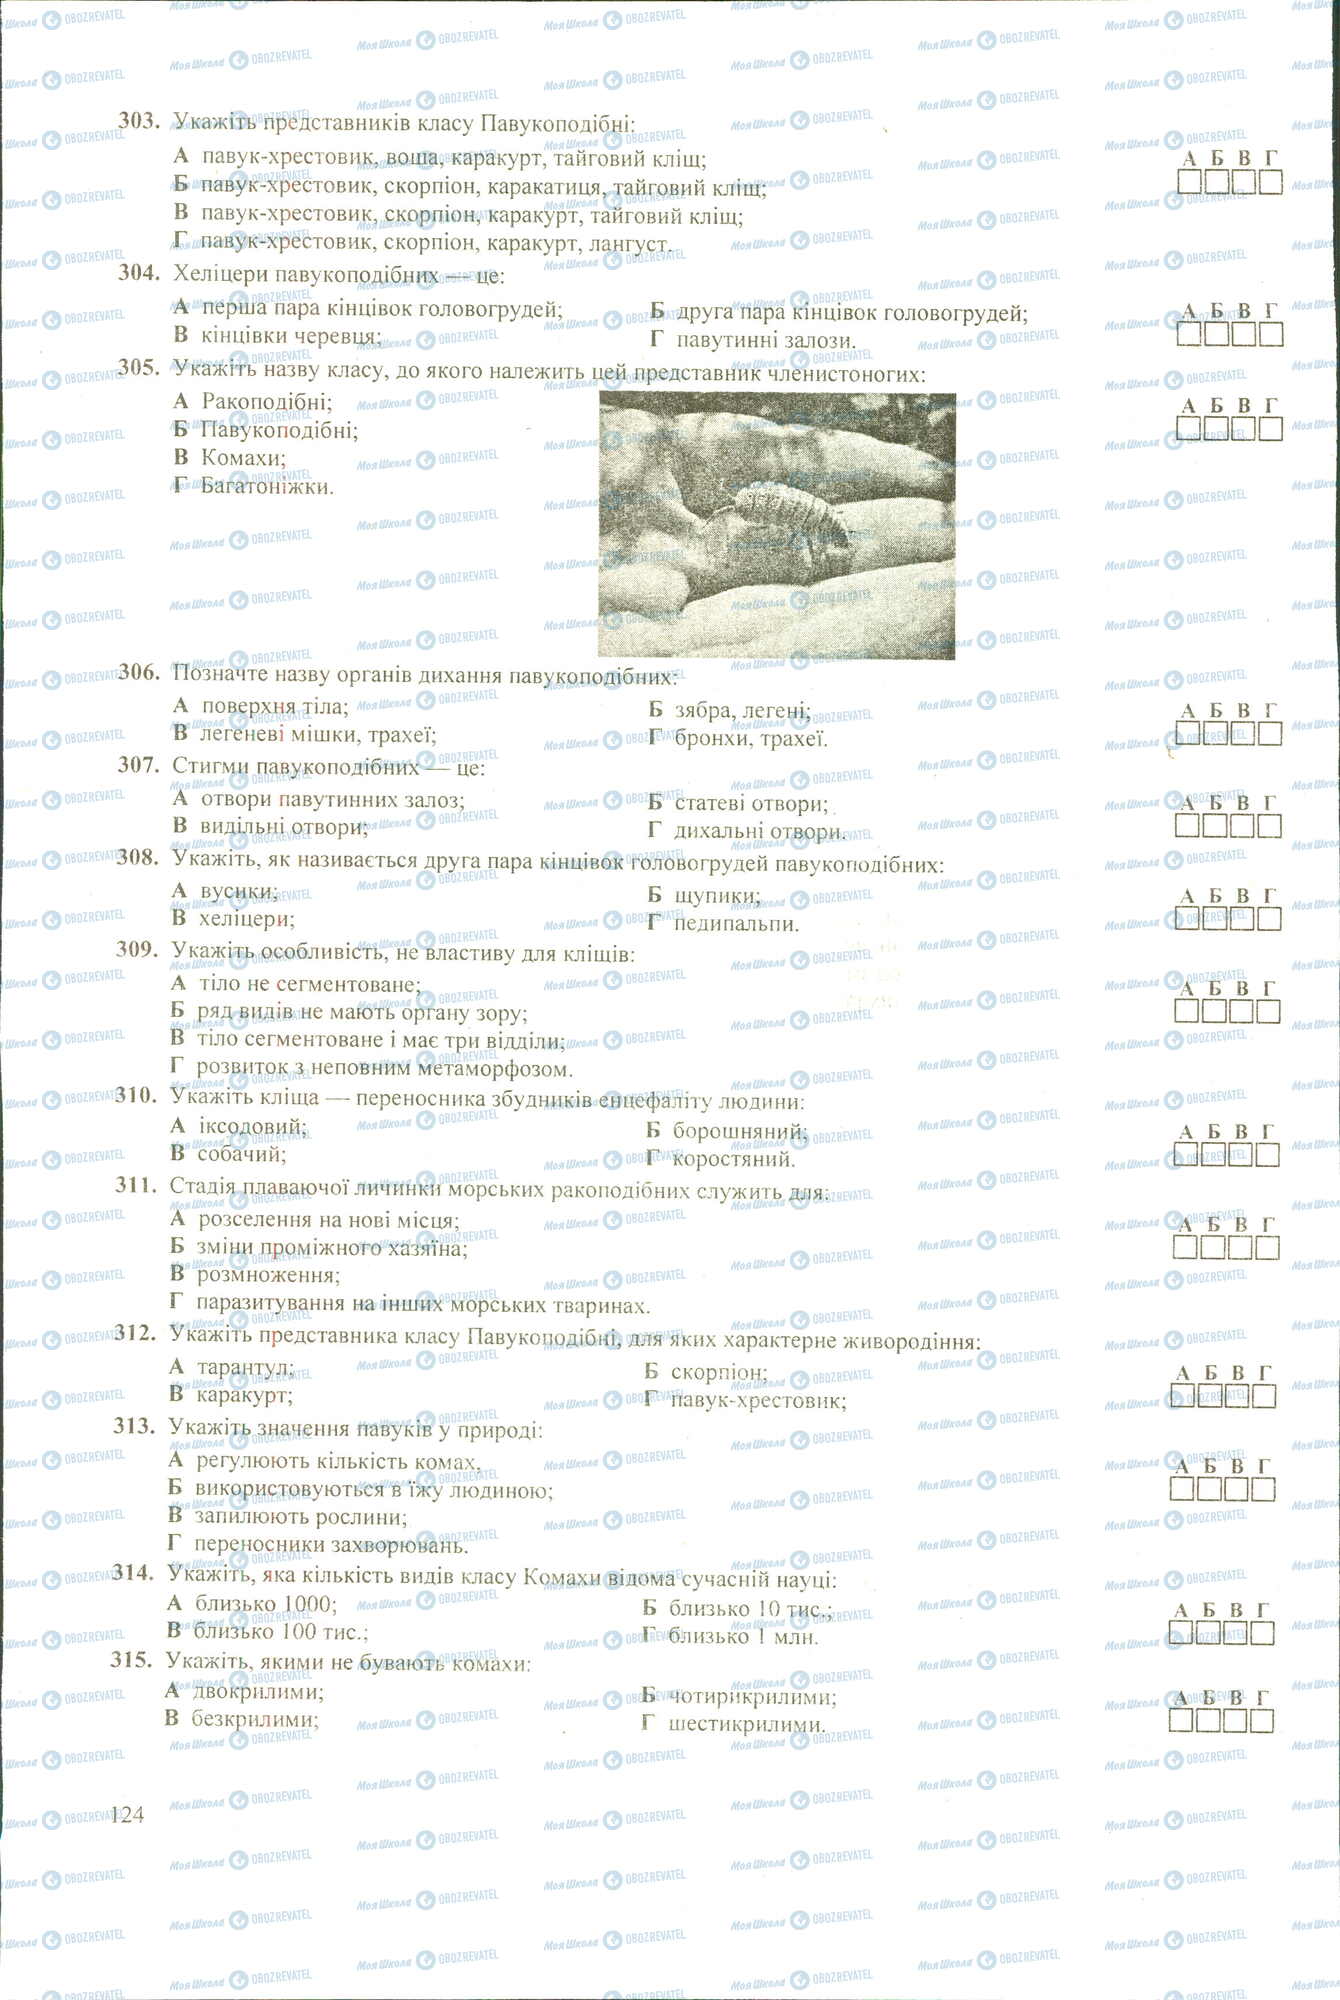 ЗНО Биология 11 класс страница 303-315